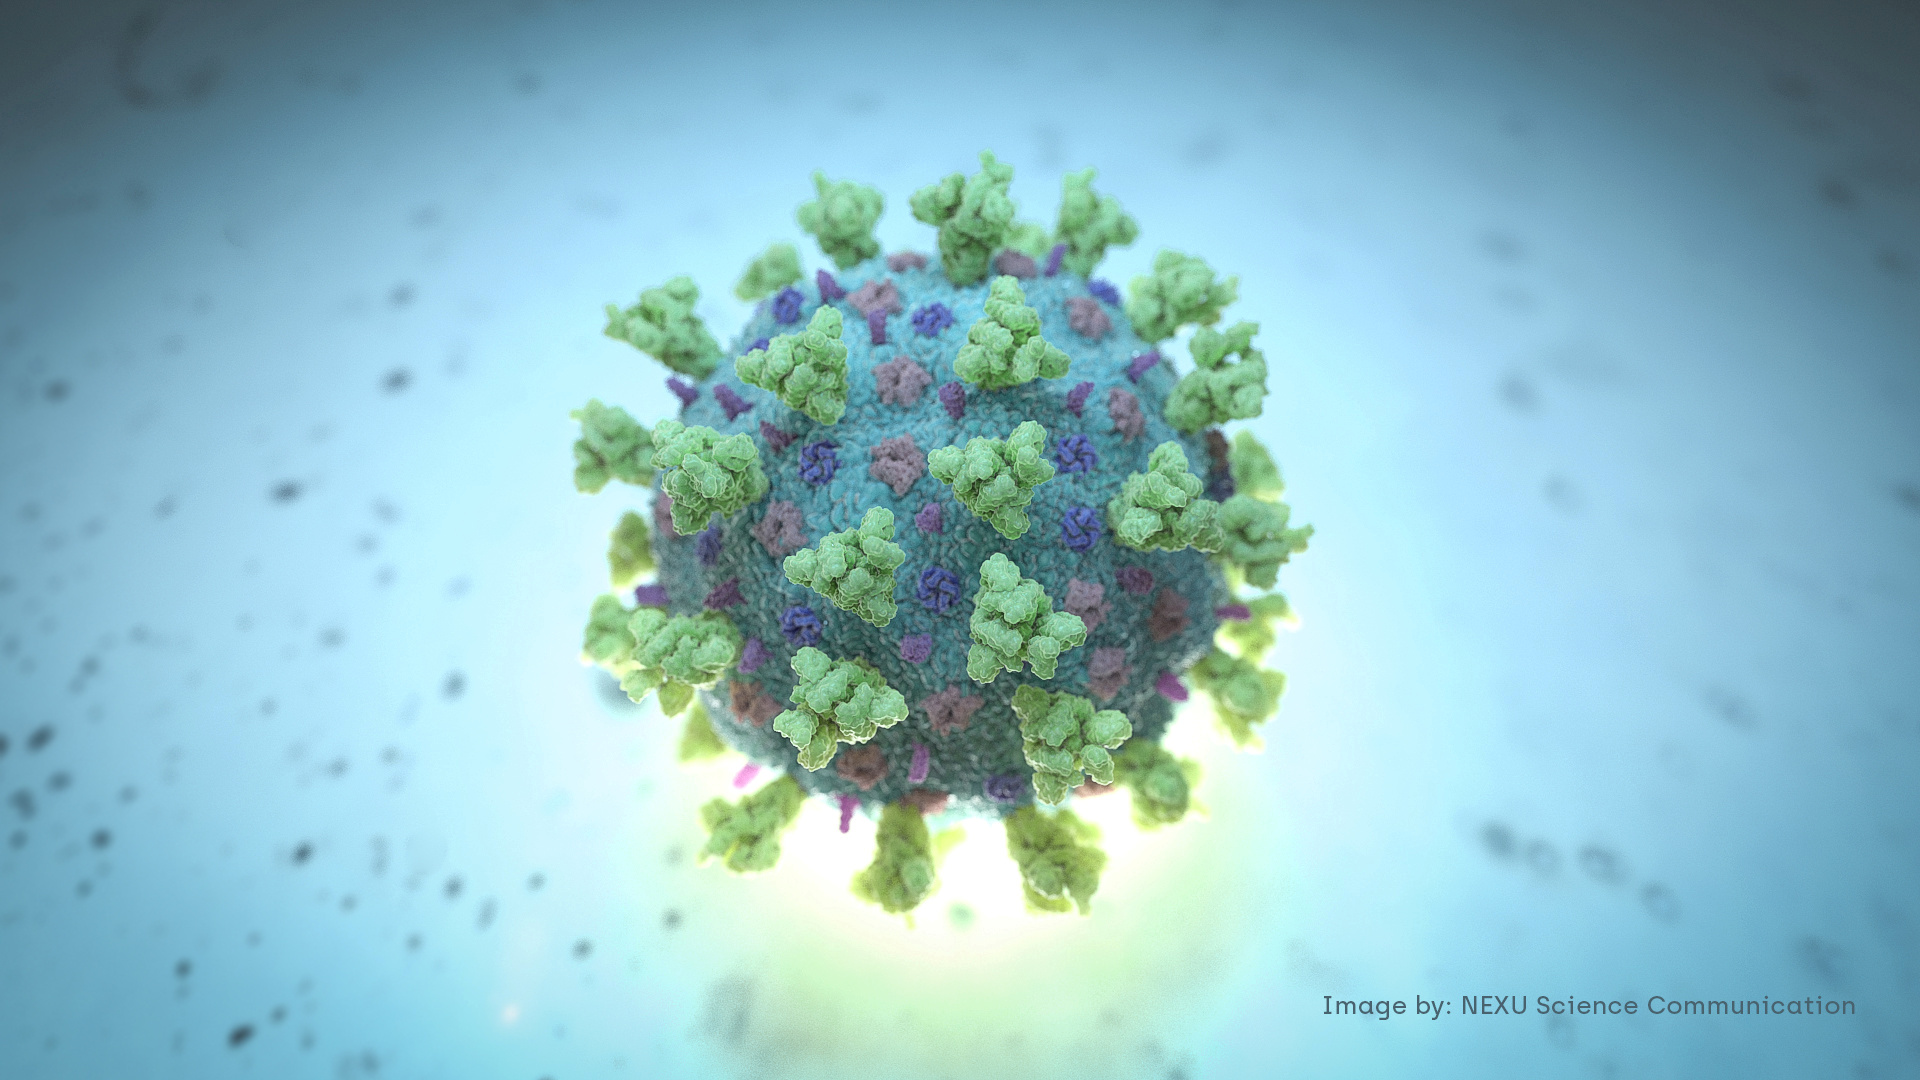 Este descubrimiento sería el inicio de un tratamiento farmacológico contra el virus (Foto: REUTERS/MANDATORY CREDIT)